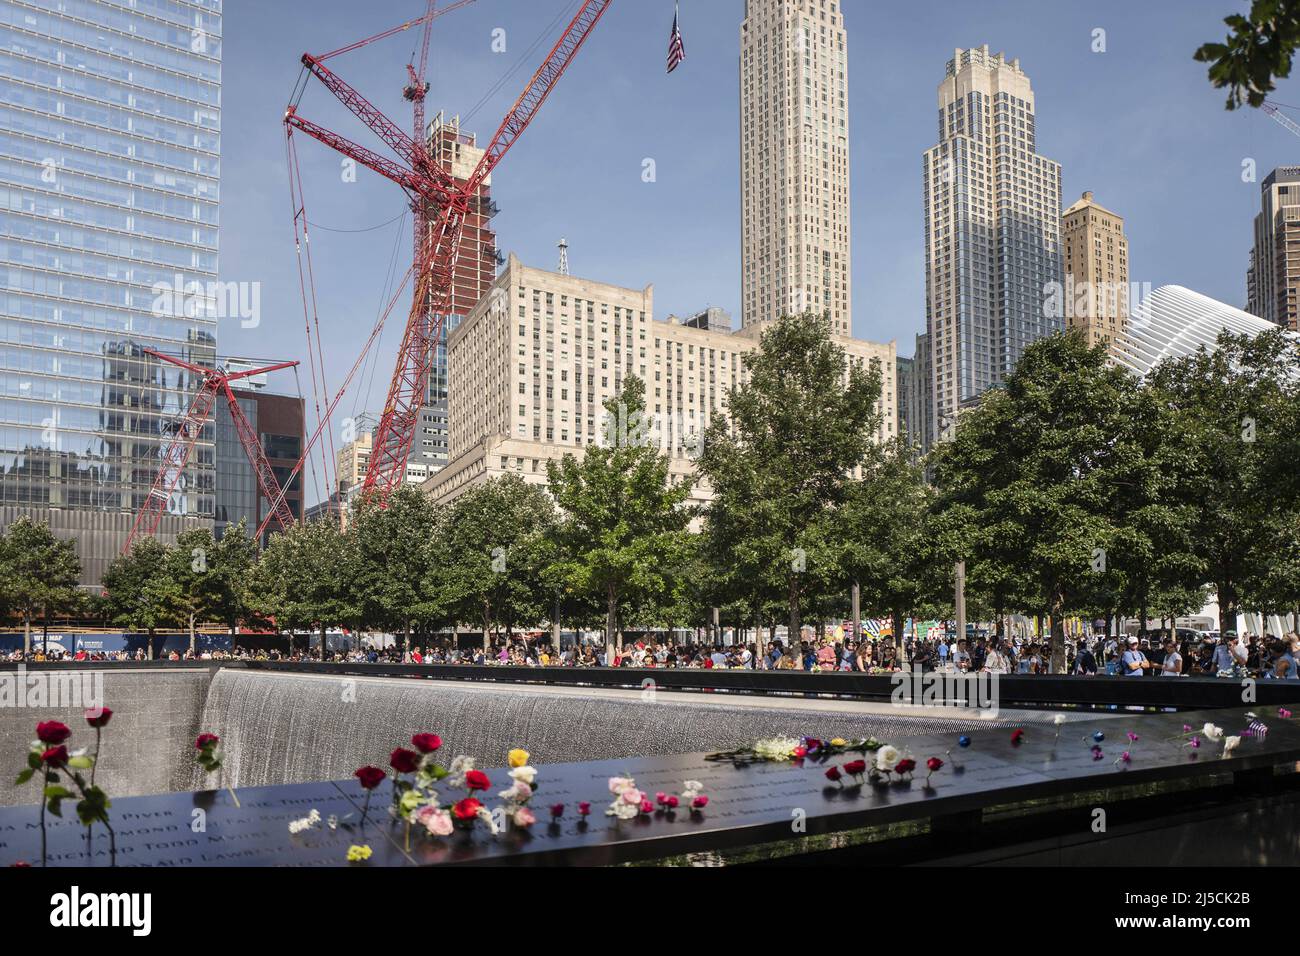 'USA, New York, 11. September 2019. Das National 9/11 Memorial in Manhattan am 11. September 2019. 18.. Jahrestag des Angriffs auf das World Trade Center in New York. Ein Moment des Schweigens und das Glockengeläut gedachten der Opfer der Terroranschläge vom 11. September 2001. Für viele Verwandte ist der Schmerz selbst nach 18 Jahren schwer zu ertragen. Das 9/11 Memorial ist ein Denkmal zur Erinnerung an die rund 3.000 Opfer der Terroranschläge vom 11. September 2001 und die Bombardierung des World Trade Center im Jahr 1993. Im Hintergrund: Der Bahnhof Oculus von Calatrava. Das World Trade Center Stockfoto